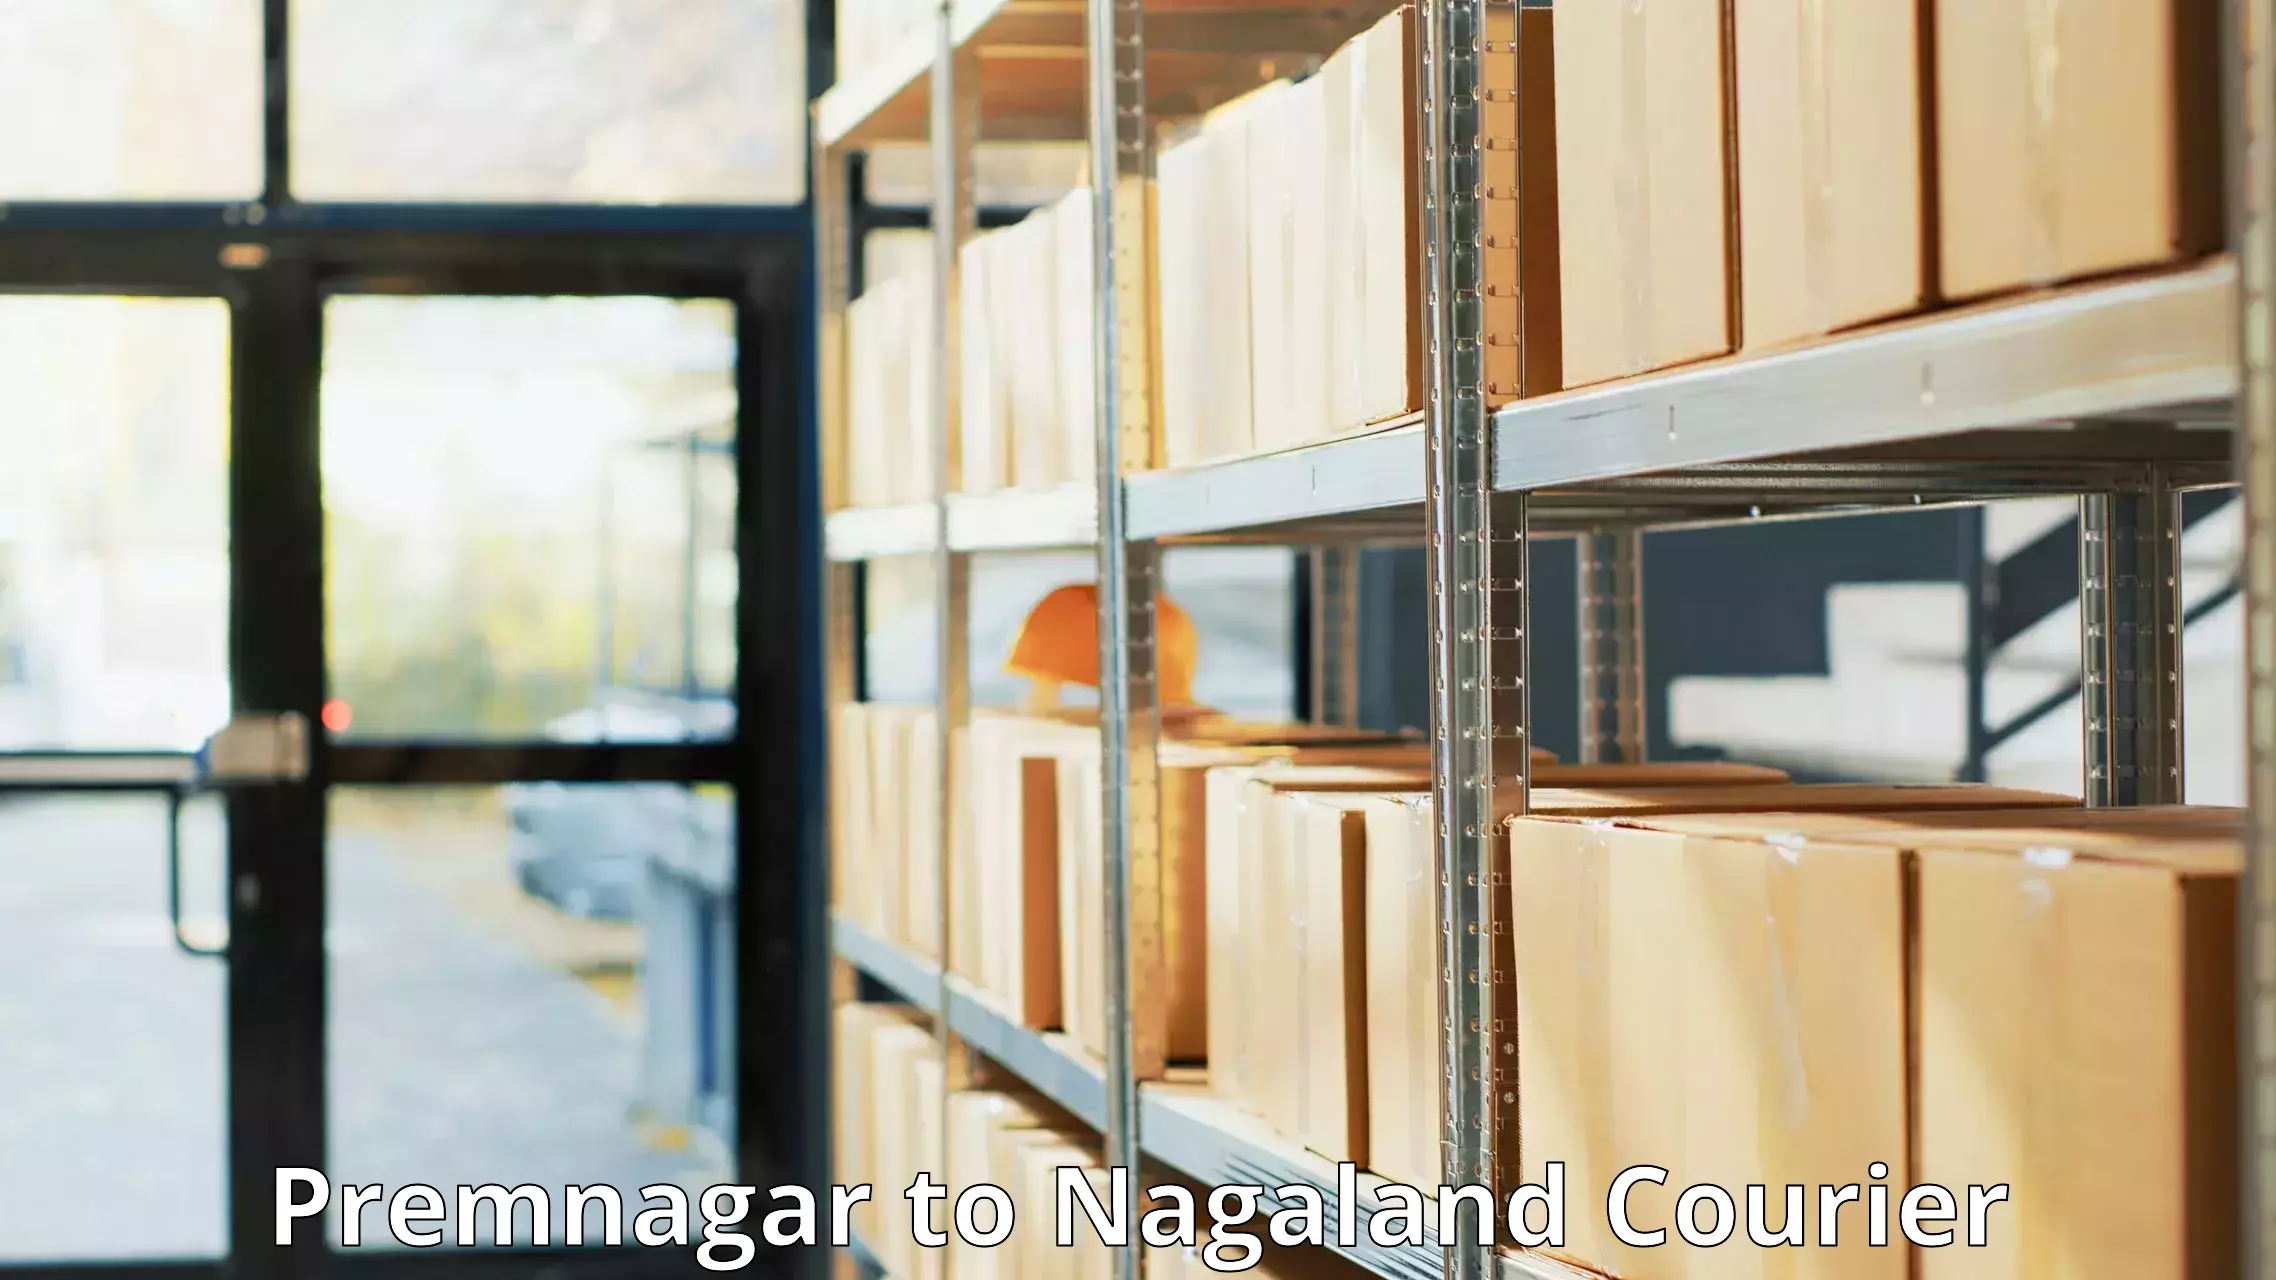 24-hour delivery options Premnagar to Nagaland